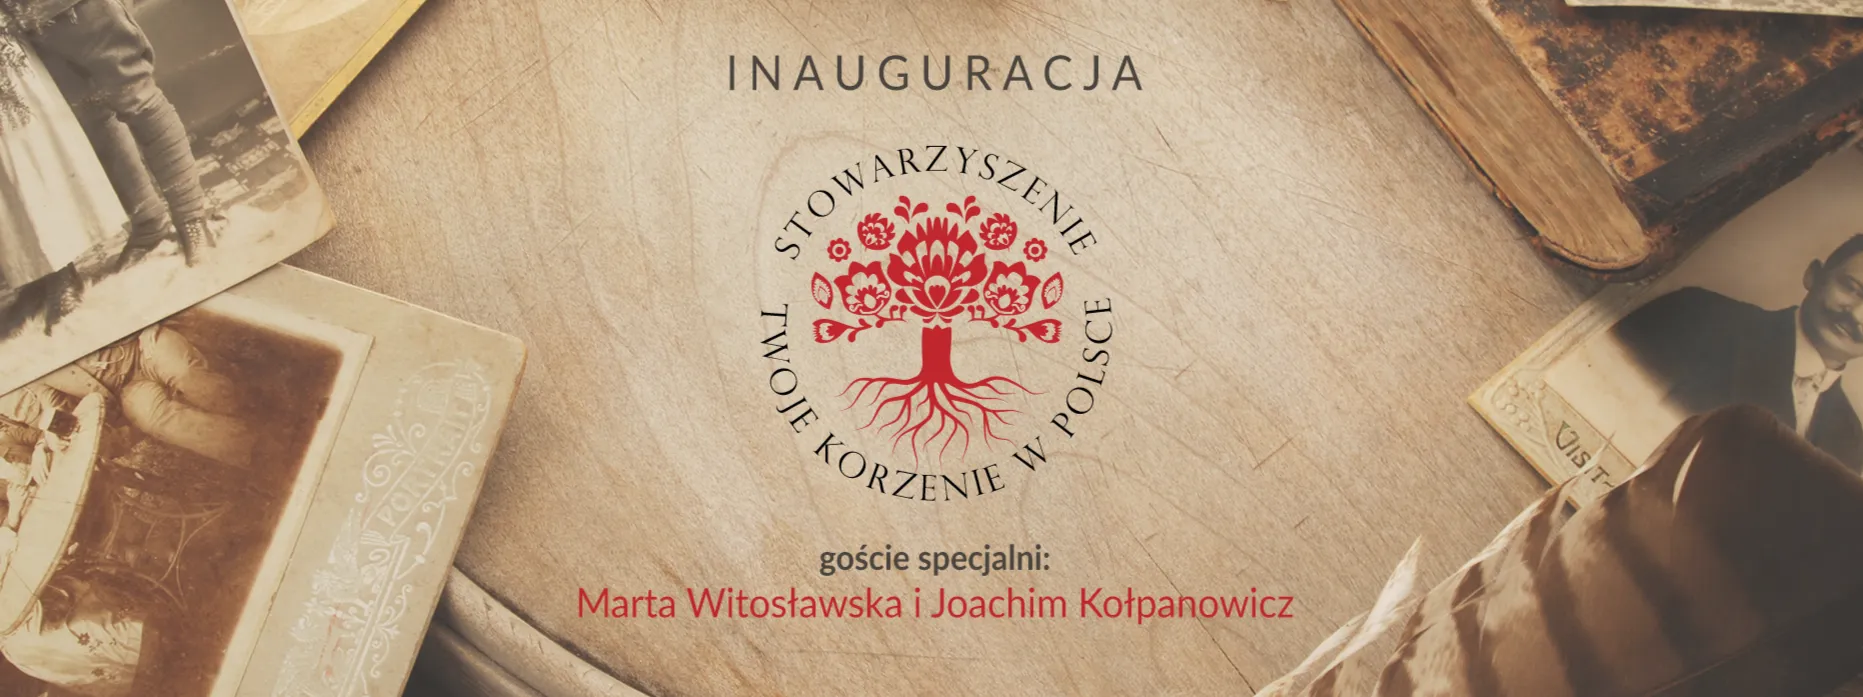 Twoje Korzenie w Polsce – inauguracja!